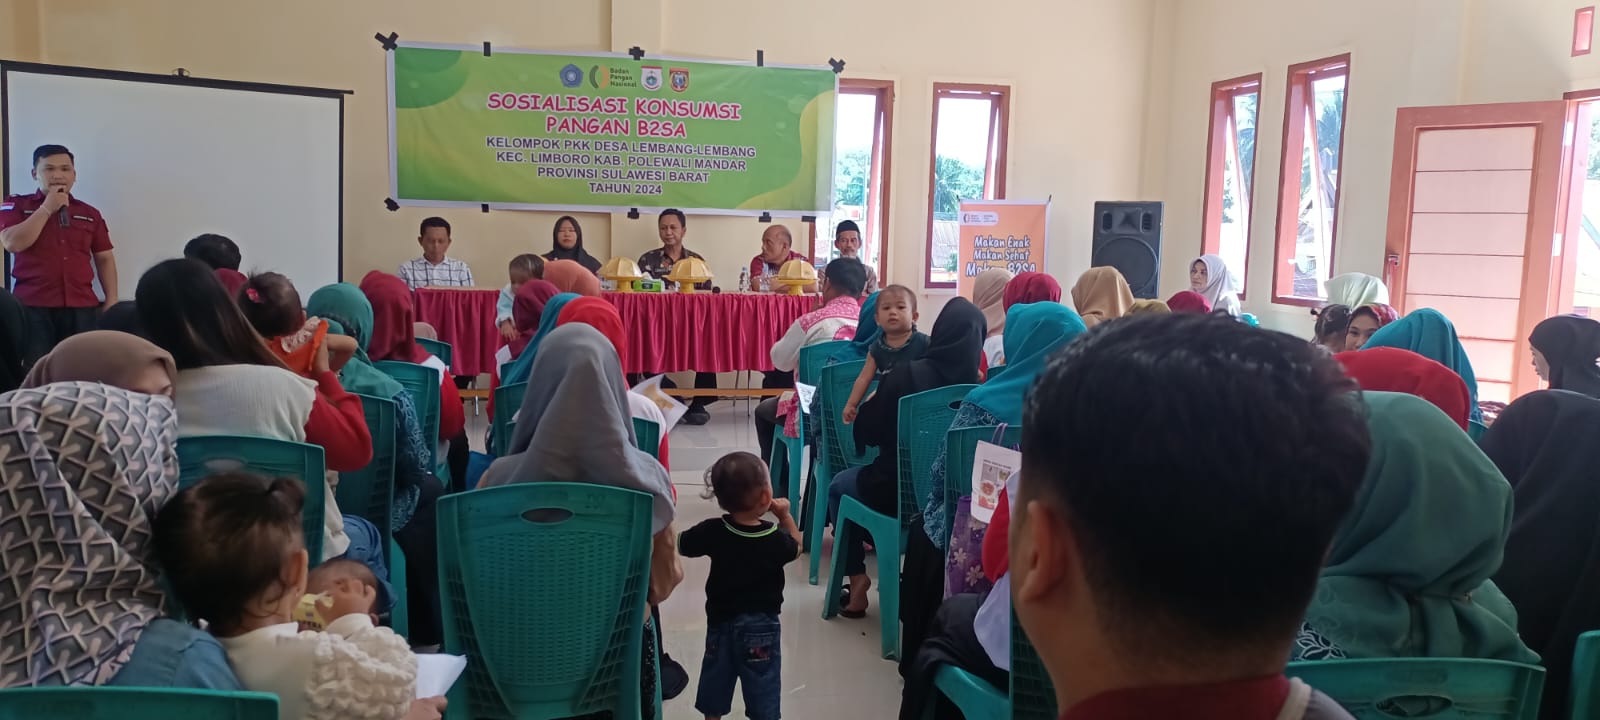 Cegah Stunting, Dinas Ketapang Sulbar Launching Rumah Pangan B2SA